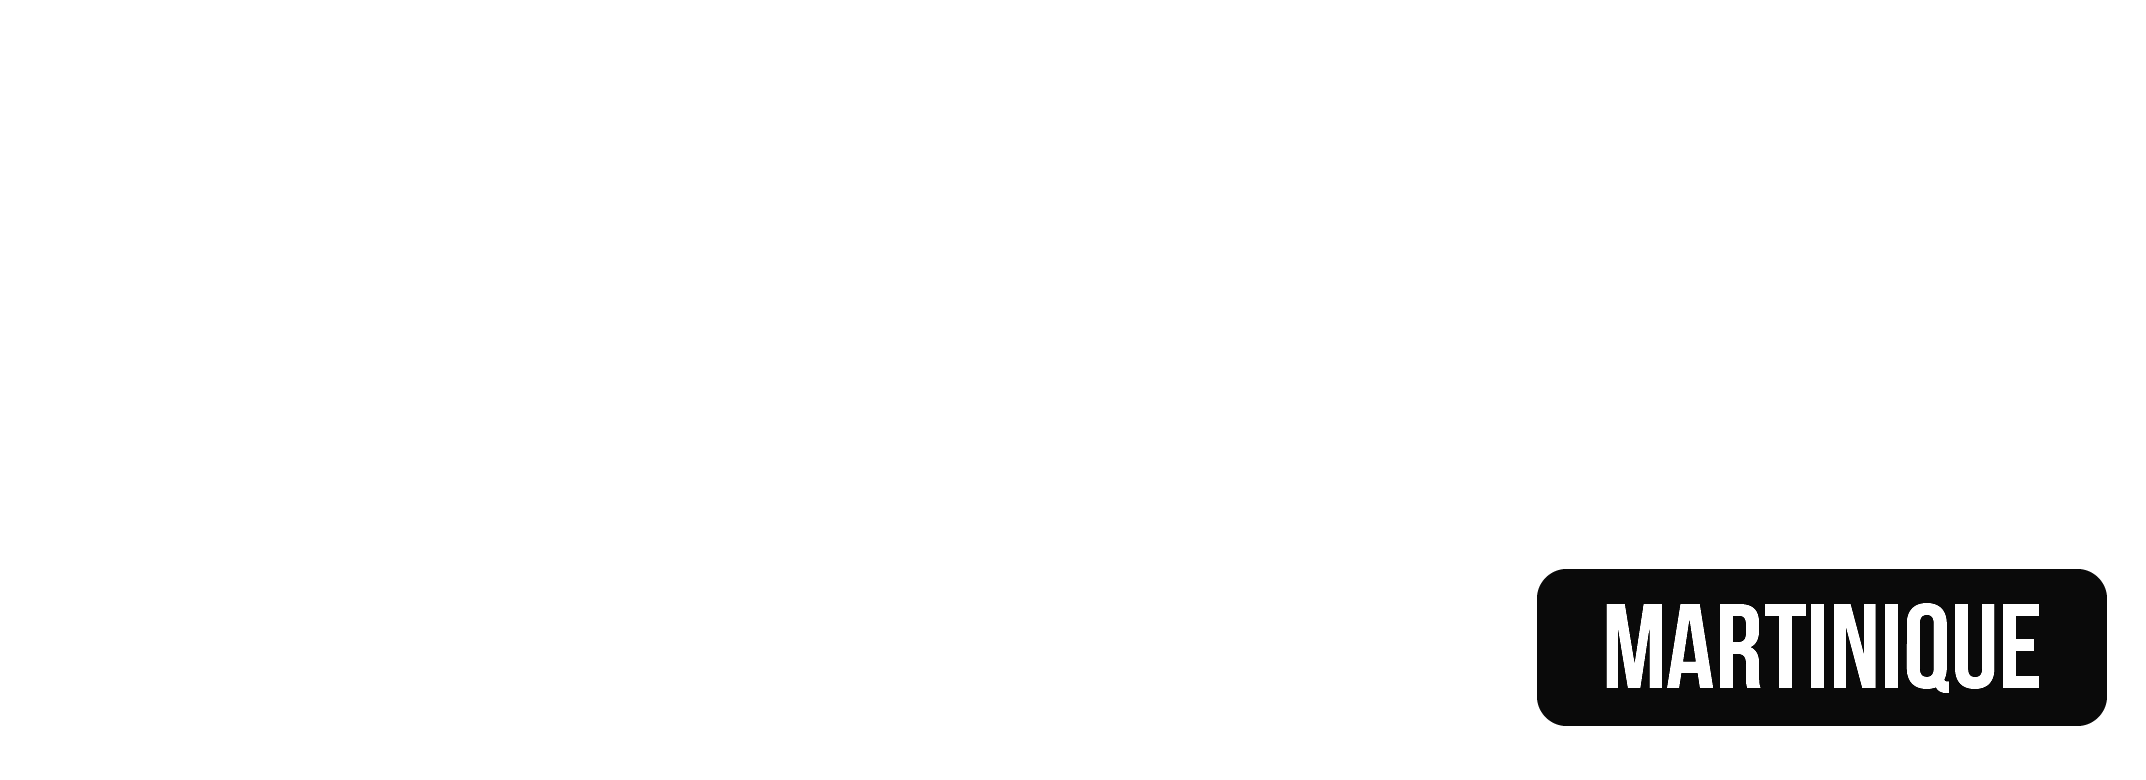 logo_cma_martinique